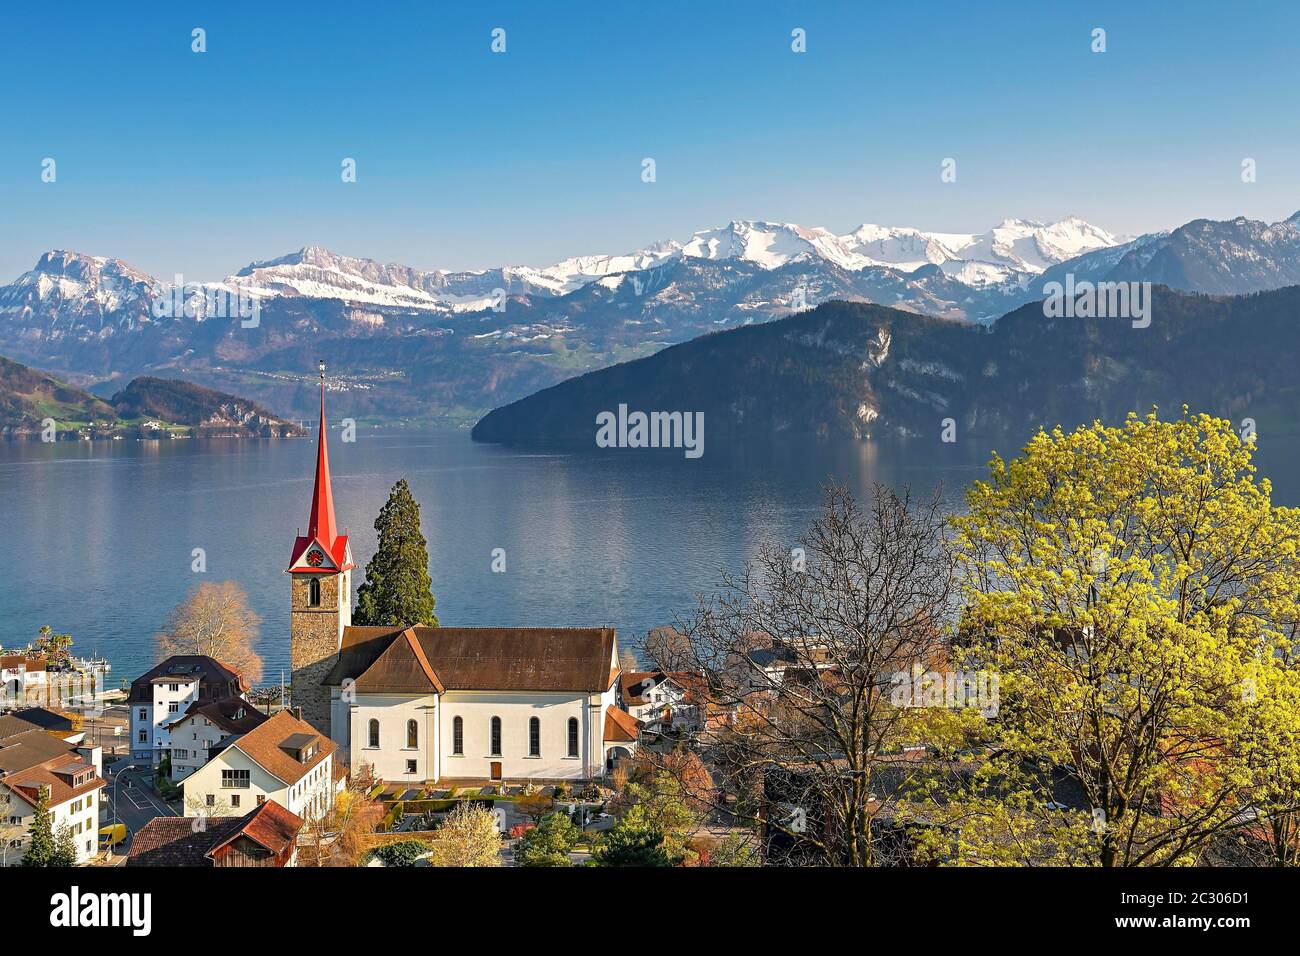 Urlaubsziel am Vierwaldstättersee mit der Pfarrkirche St. Maria hinter den verschneiten Alpen, Weggis, Kanton Luzern, Schweiz Stockfoto